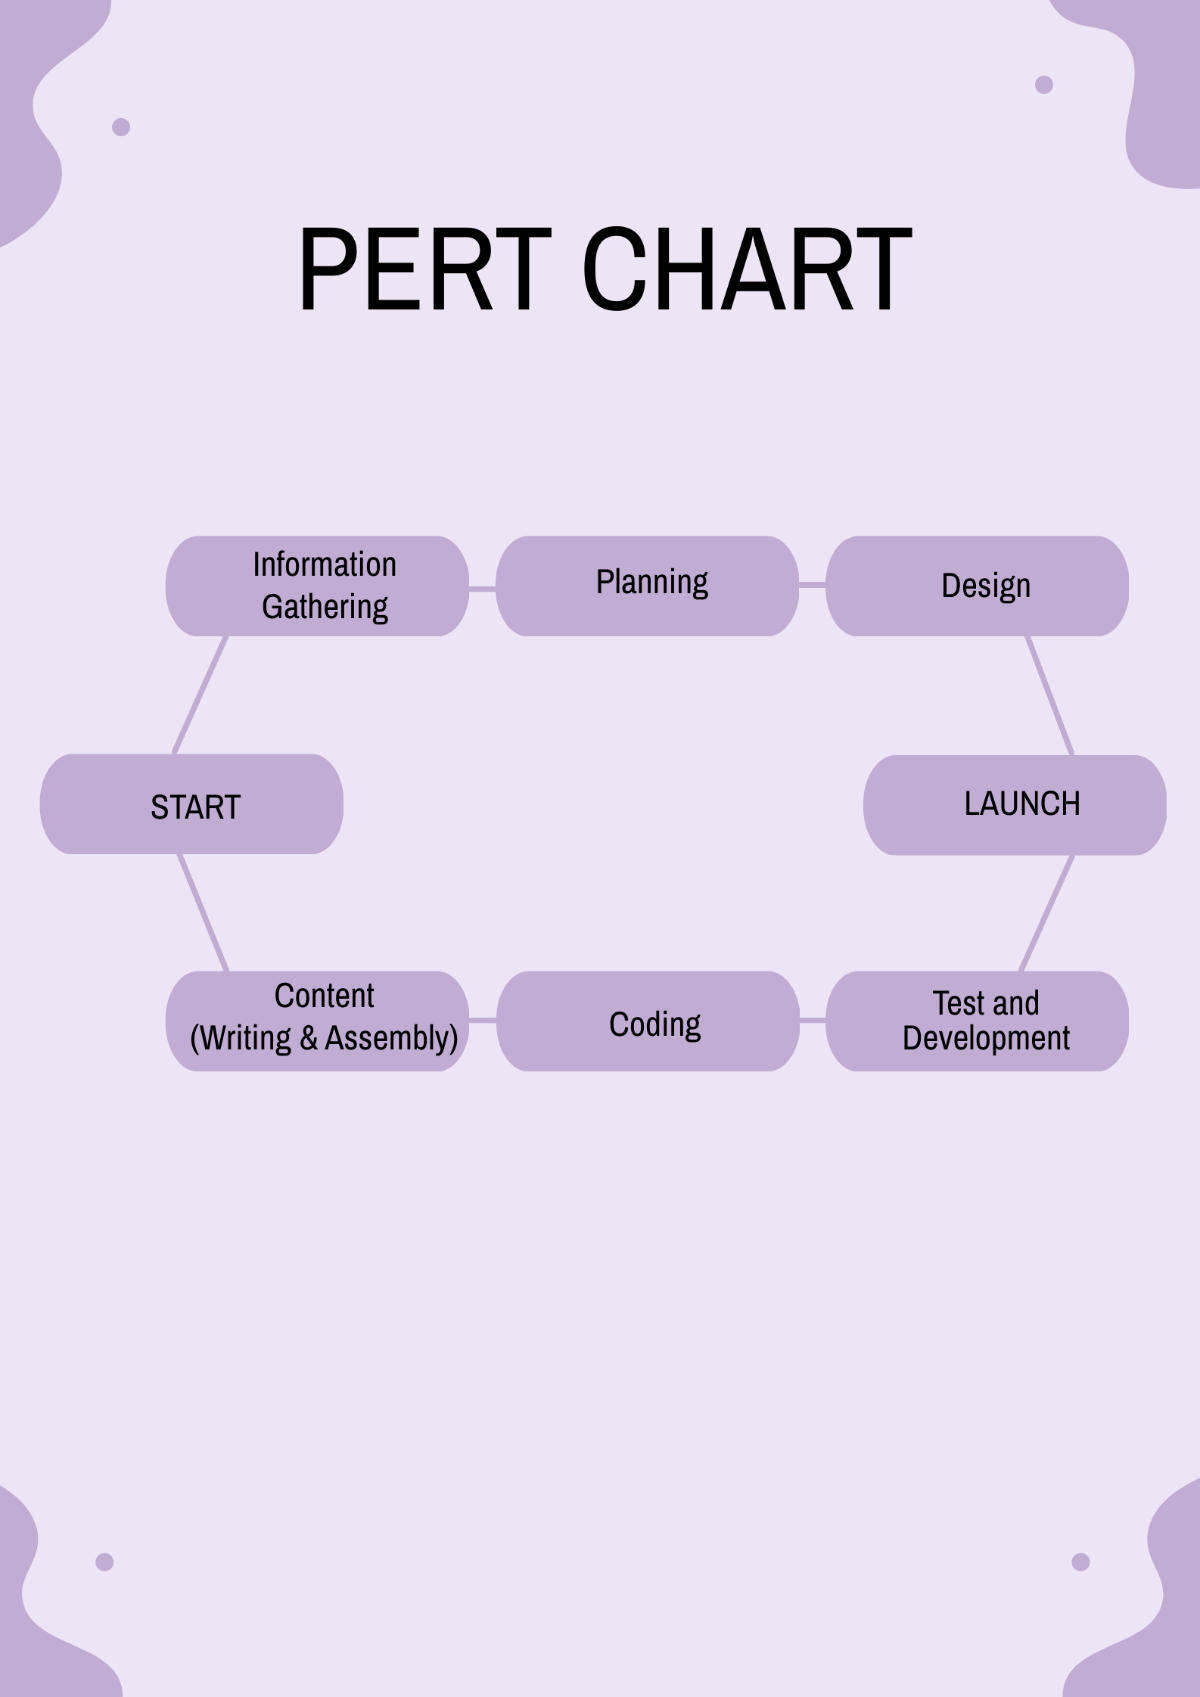 PERT Chart